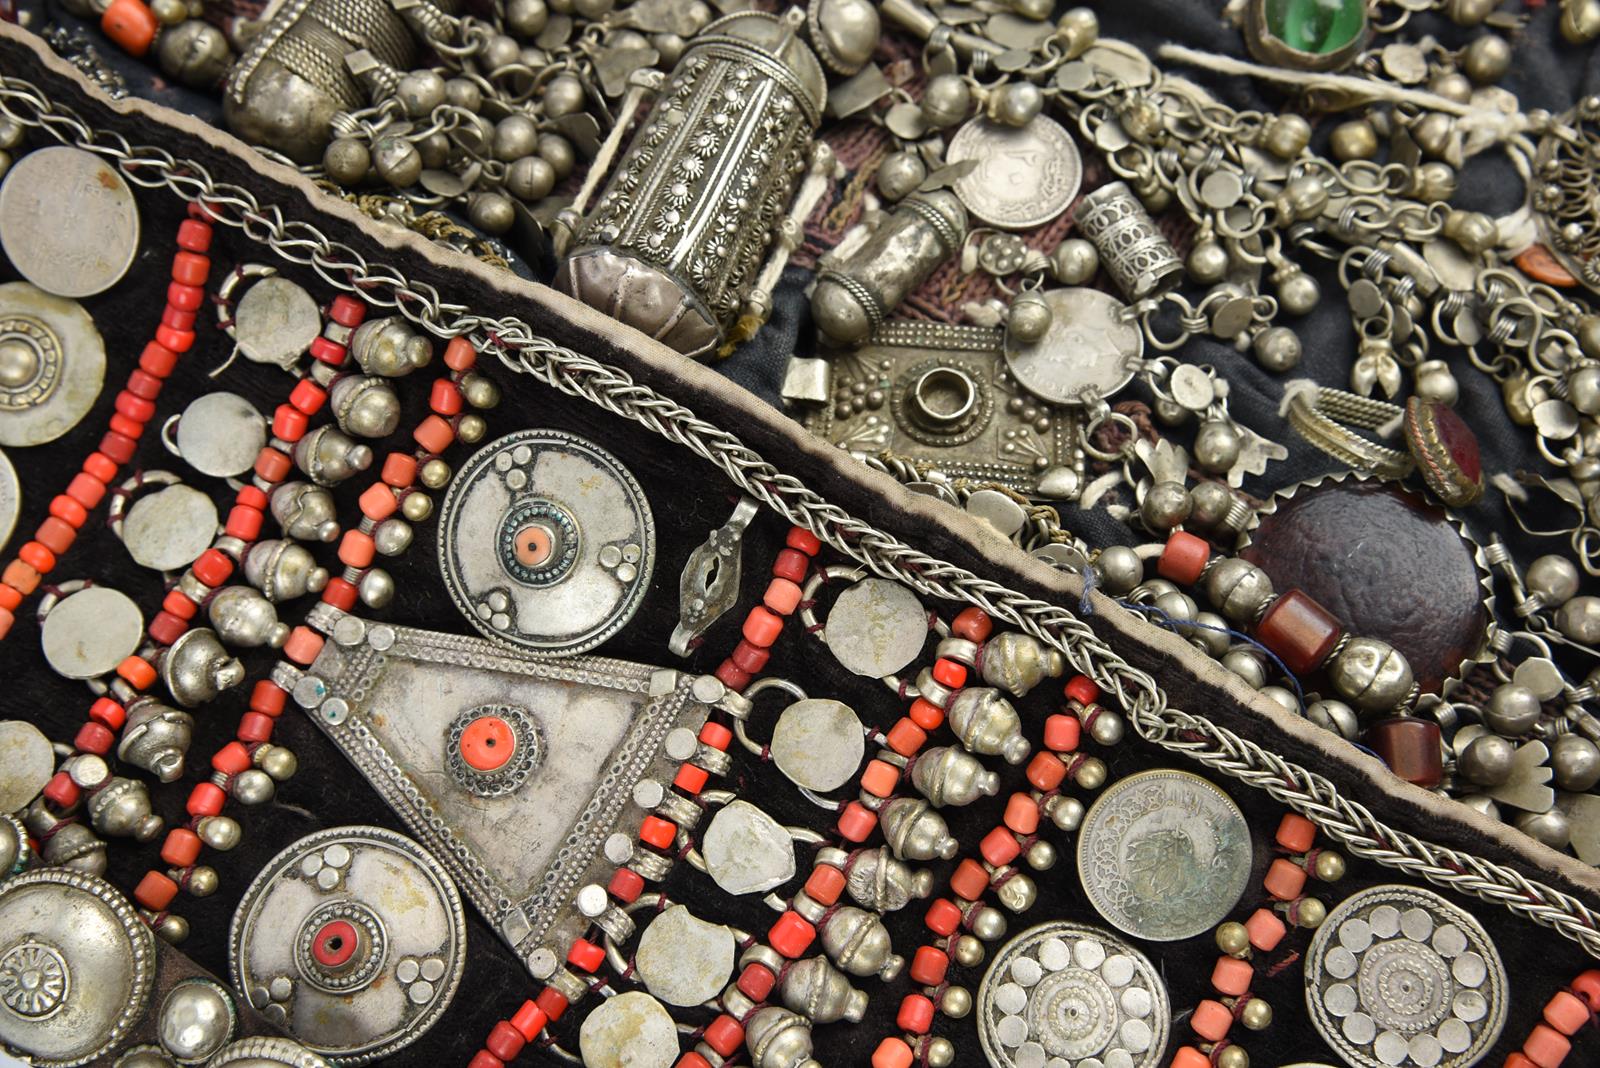 λA Bedouin amulet chest ornament cloth with numerous sewn on amulets and beads, 62cm long, and three